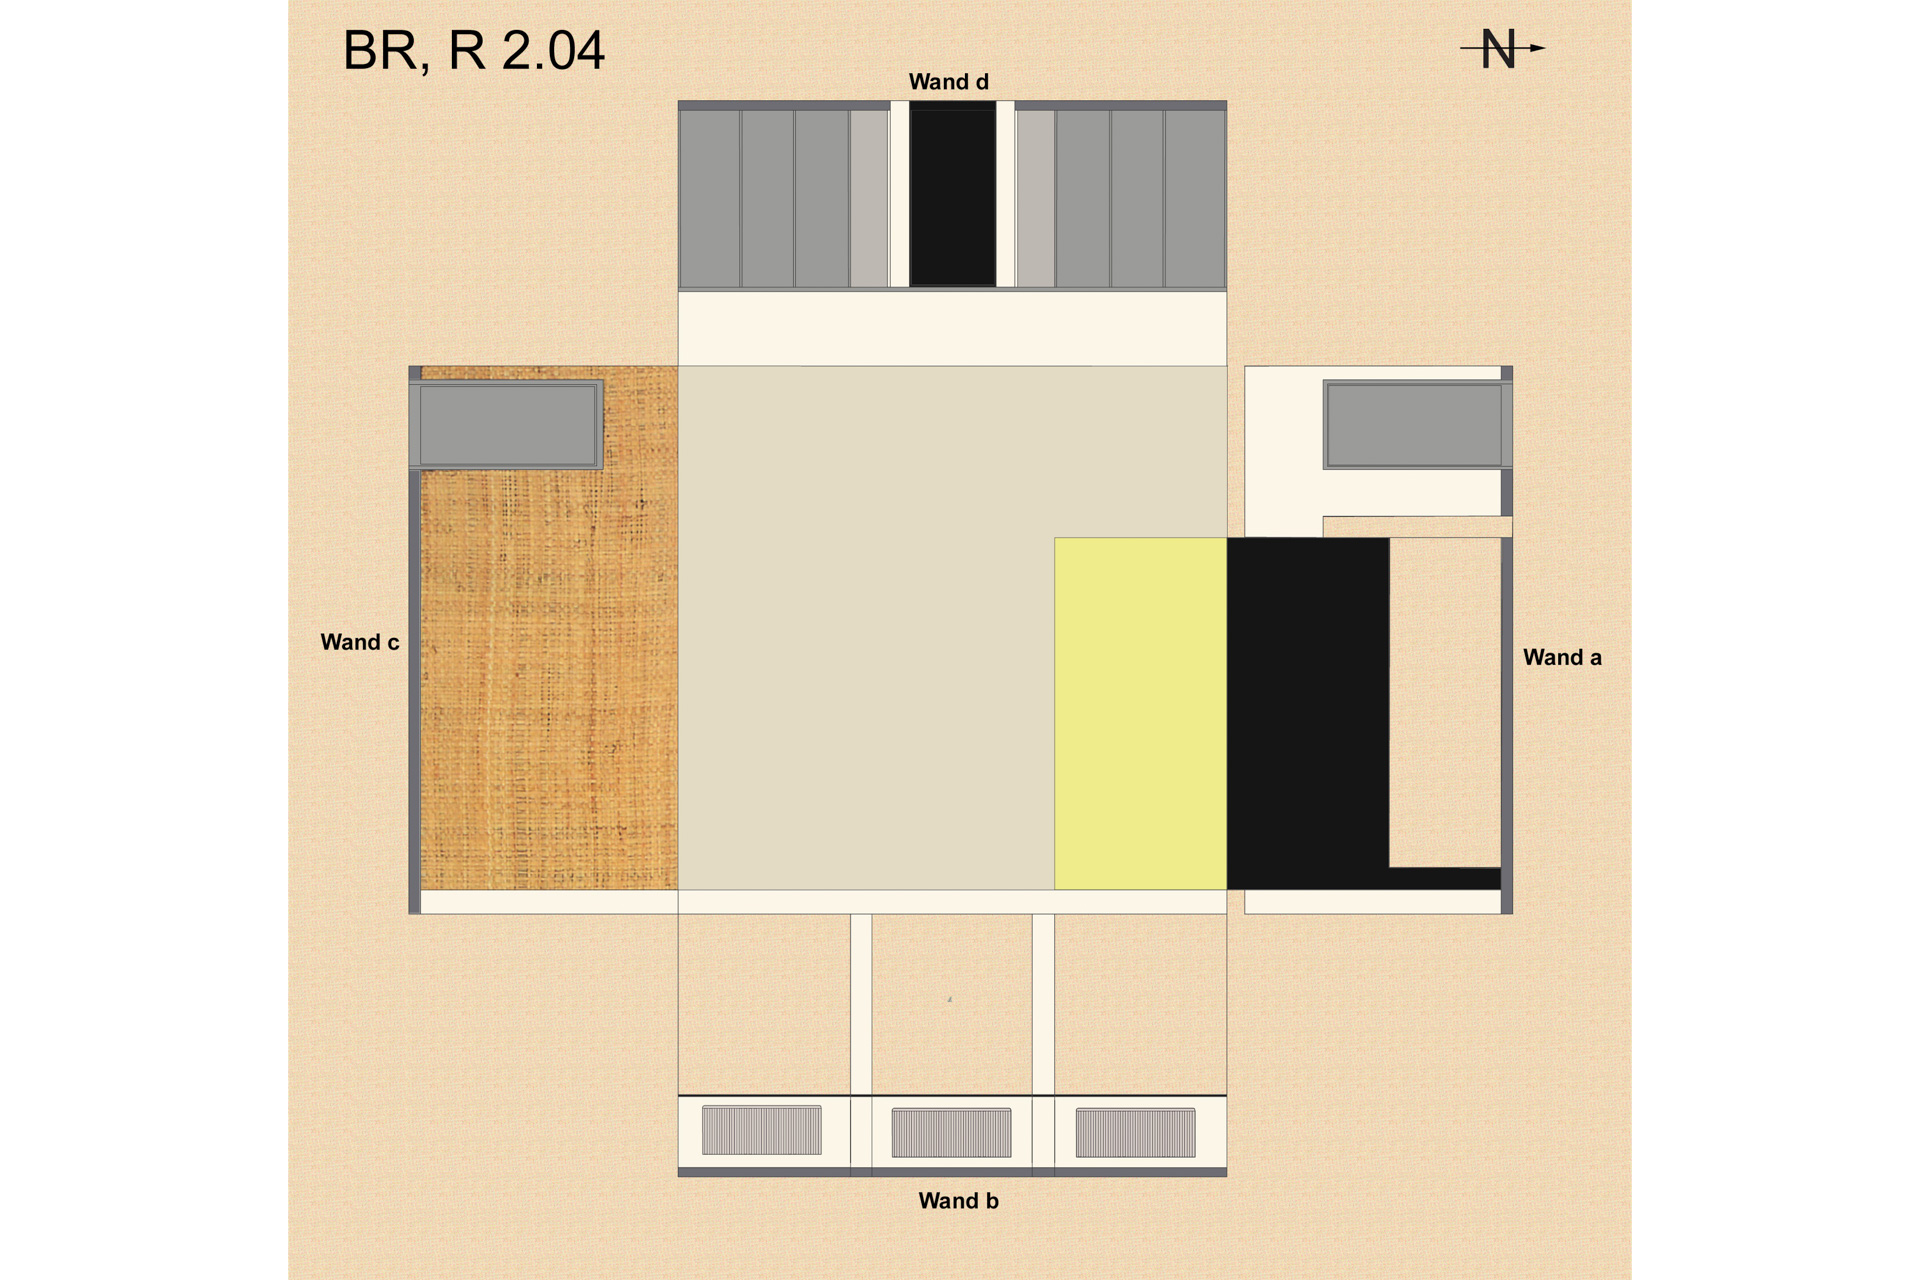 Restaurierung, Farbkonzept, Bestandsanalyse - Dessau, Bauhausgebäude, Gropiuszimmer